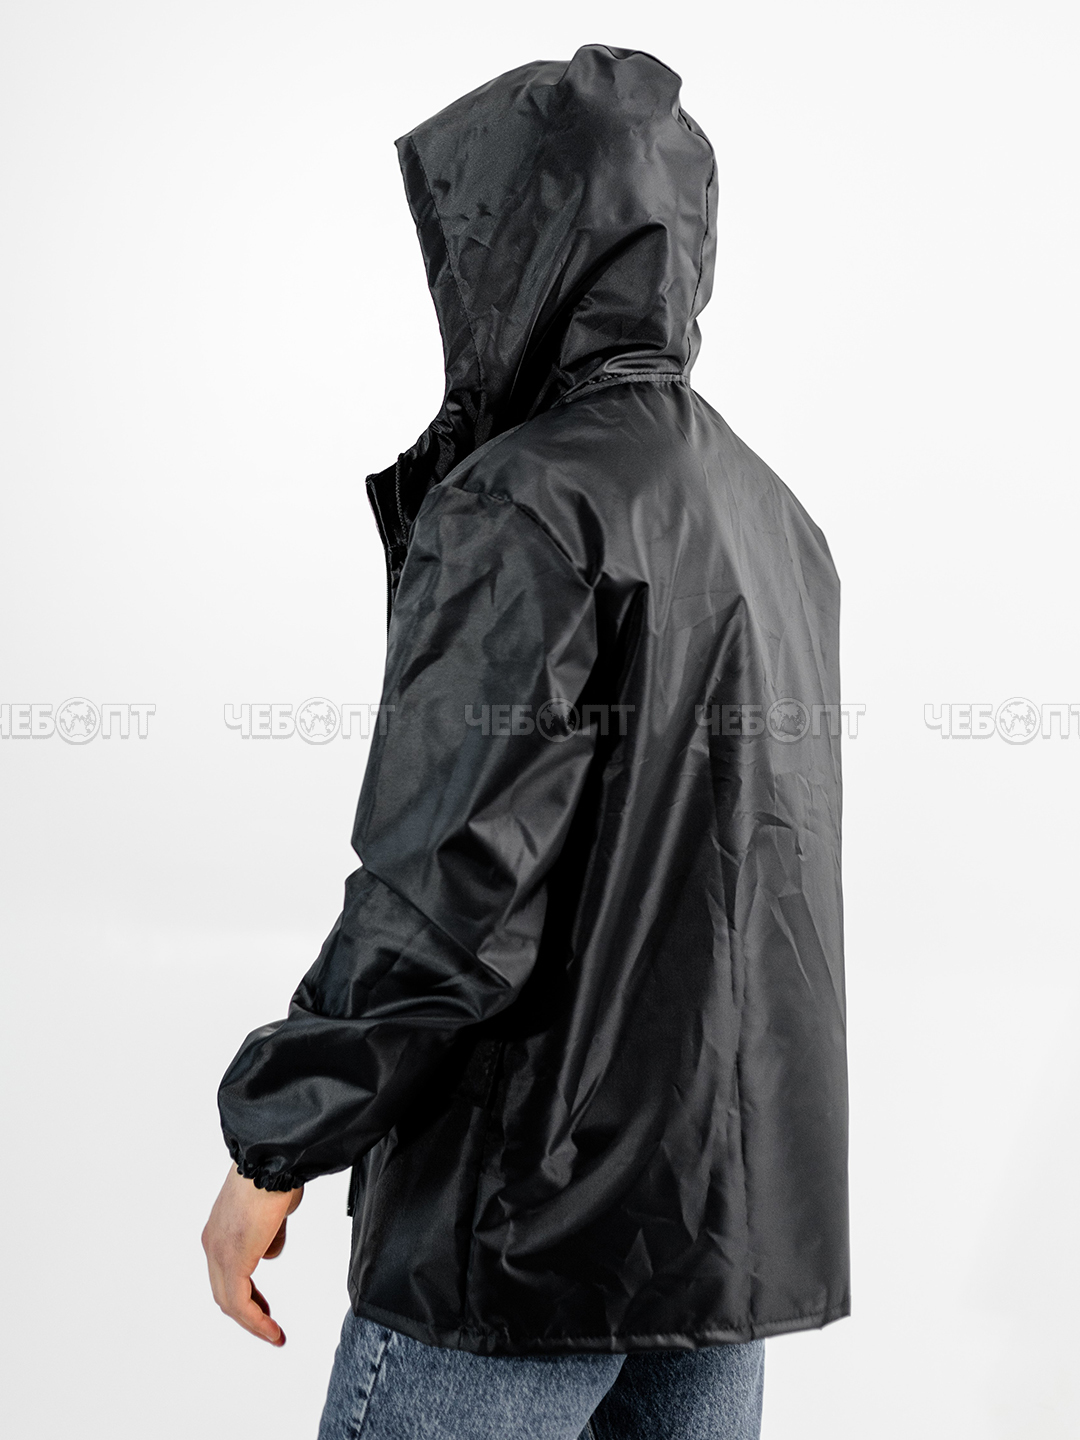 Куртка дождевик мужская, женская ЧЕБПРО,размер 44-46,100% полиэстер, Арт. КуртМуж/черный, МПС [15] СобПр. ЧЕБОПТ.